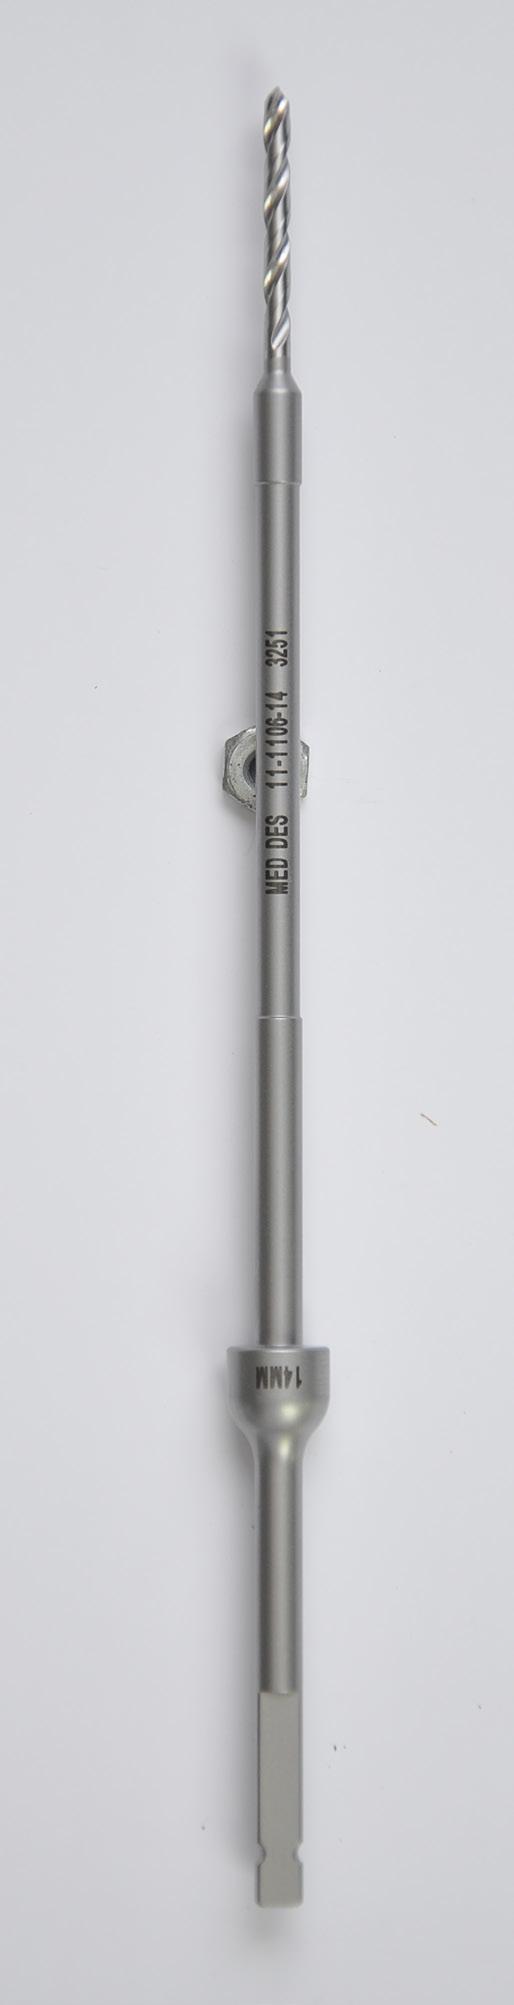 11-1106-FD14 Drill Bit (16mm)